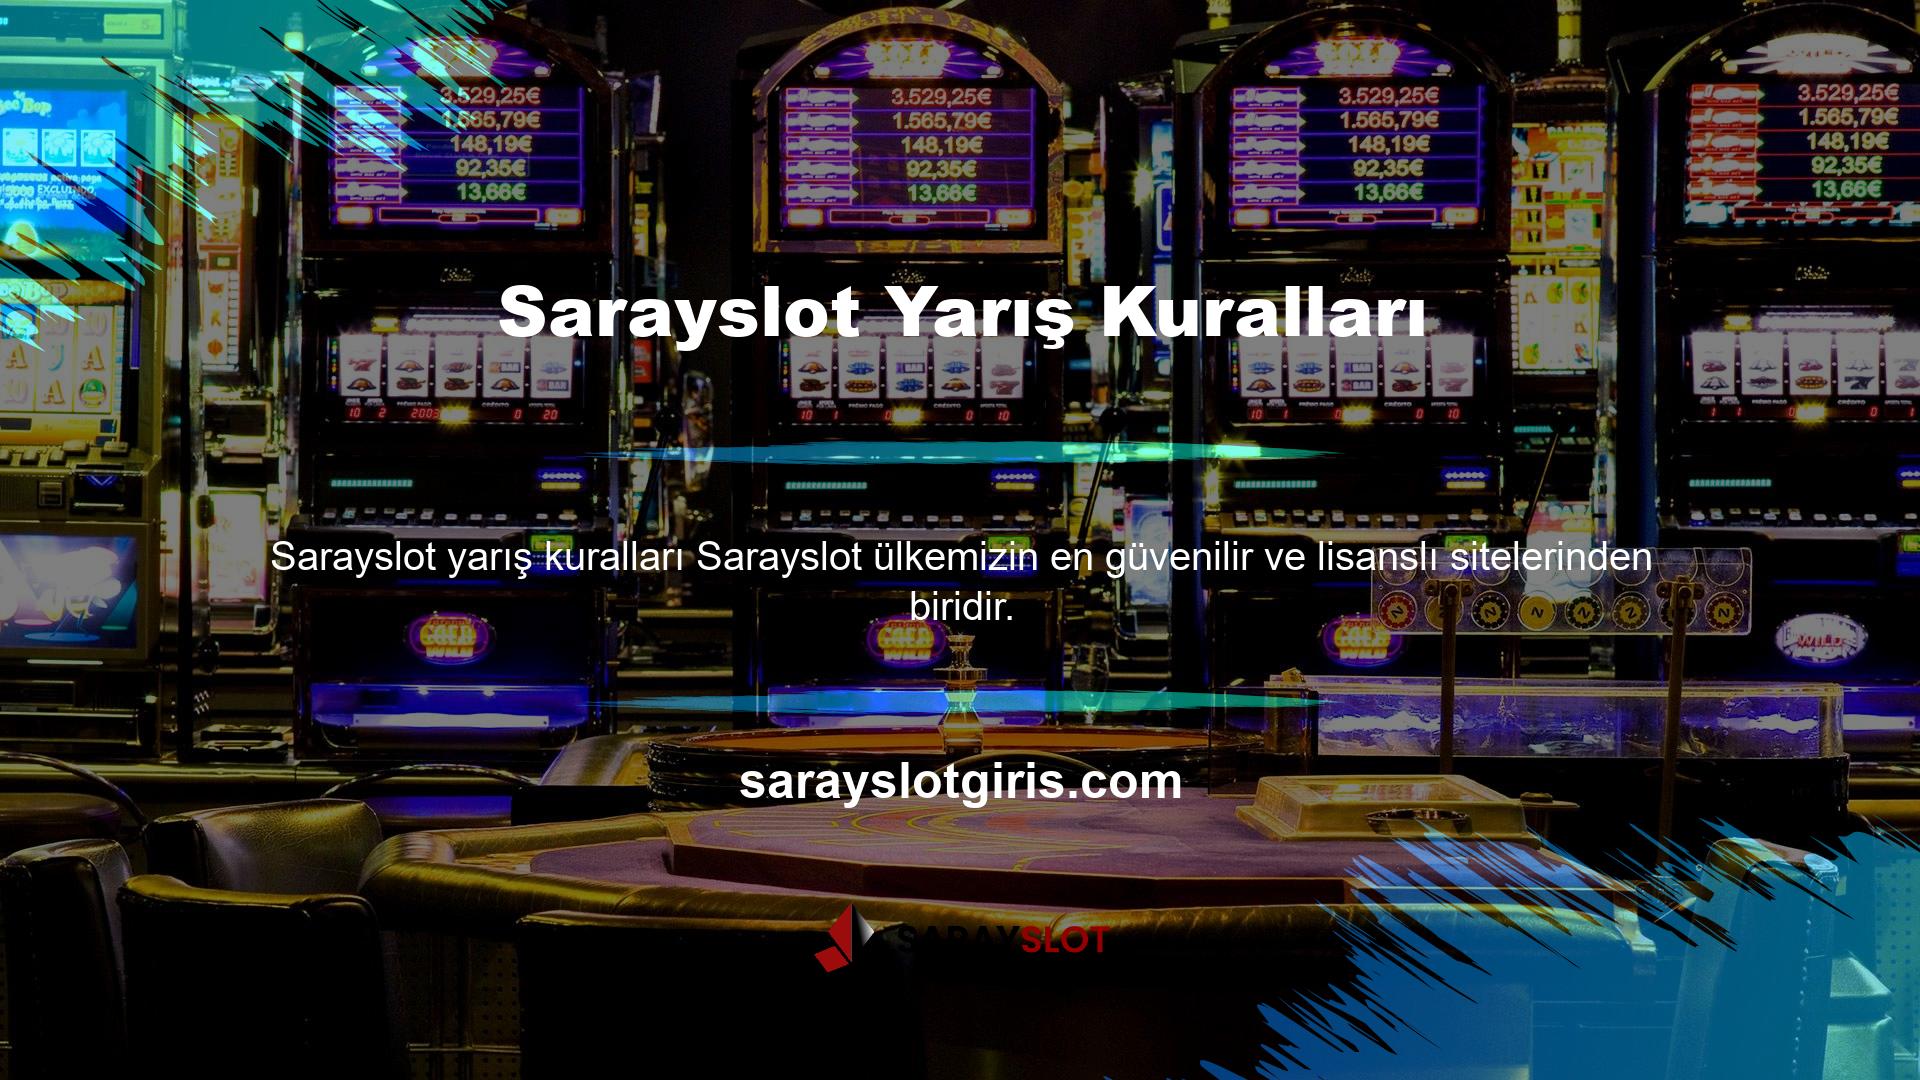 Yetkili site olarak tanımlanan Sarayslot resmi olarak tescilli Casino markası haline gelen Sarayslot ile çalışmaktadır